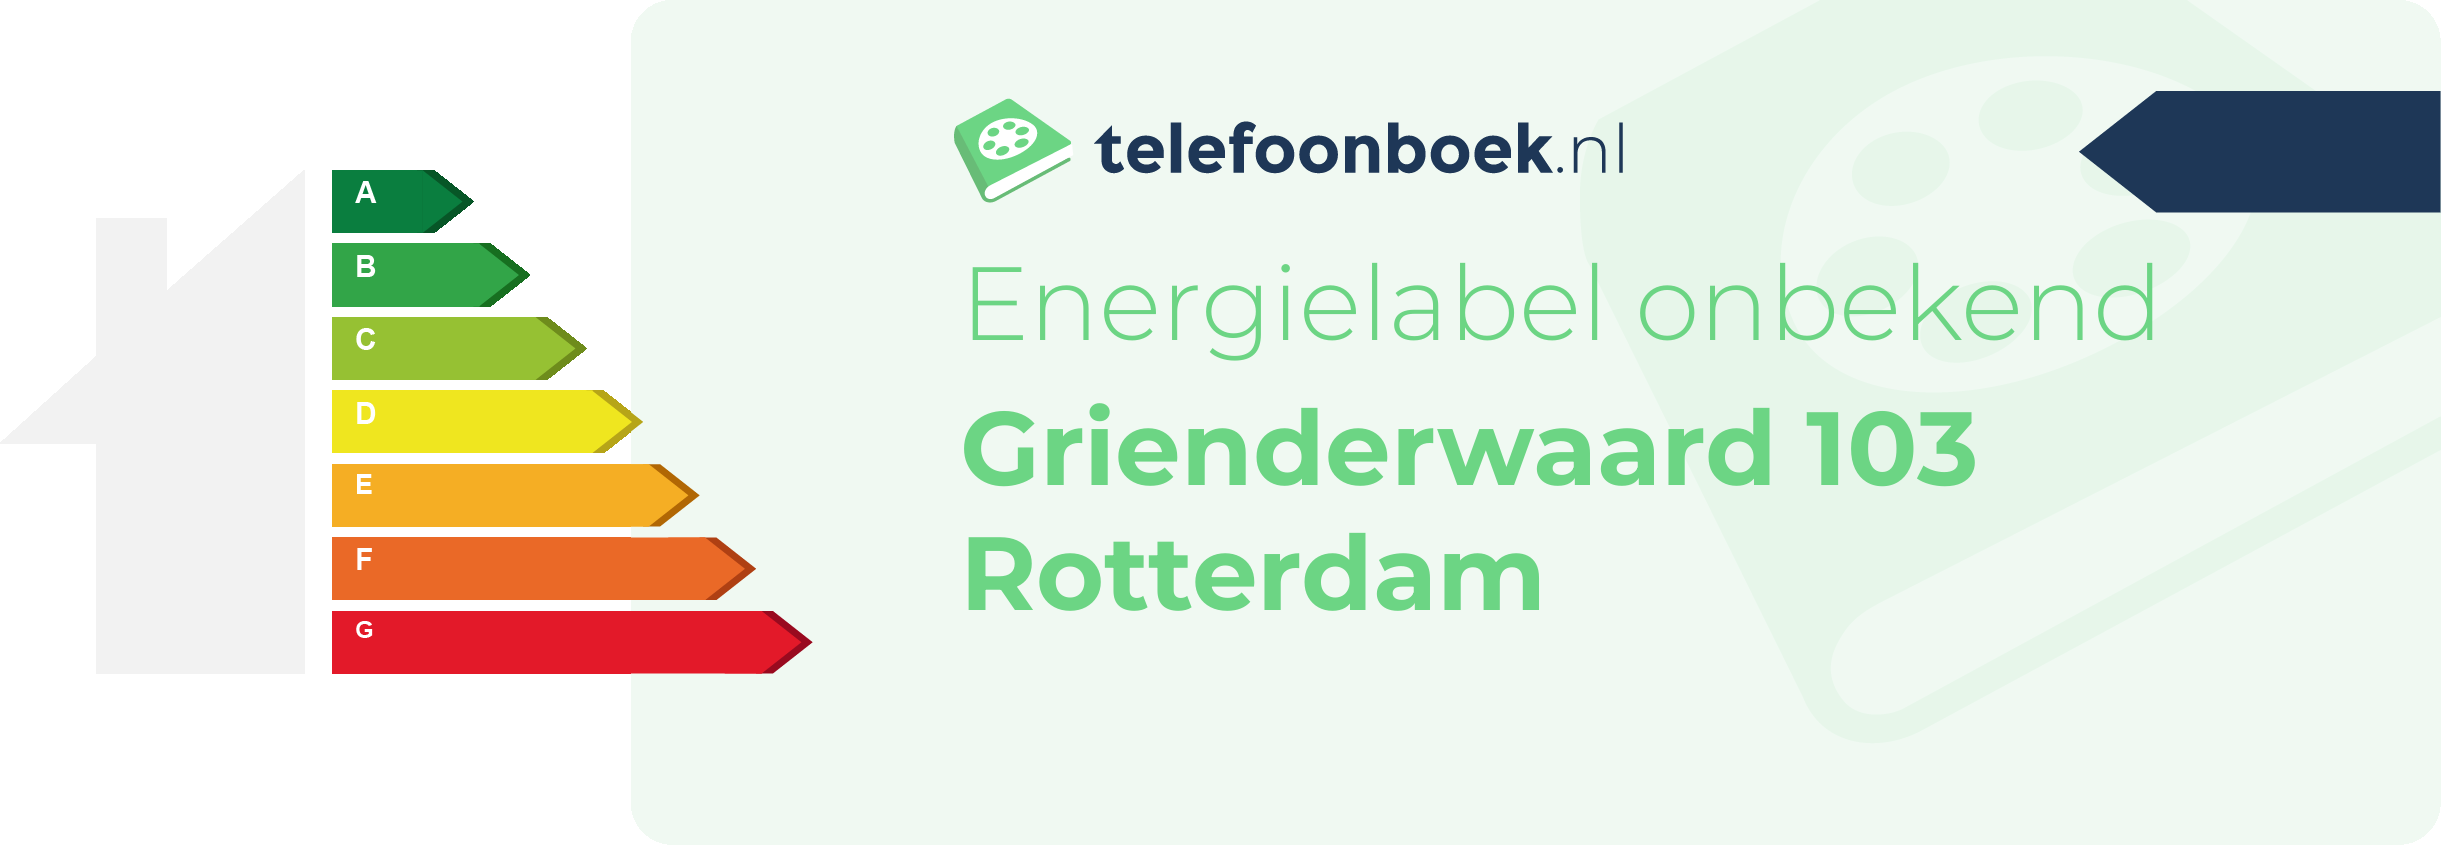 Energielabel Grienderwaard 103 Rotterdam